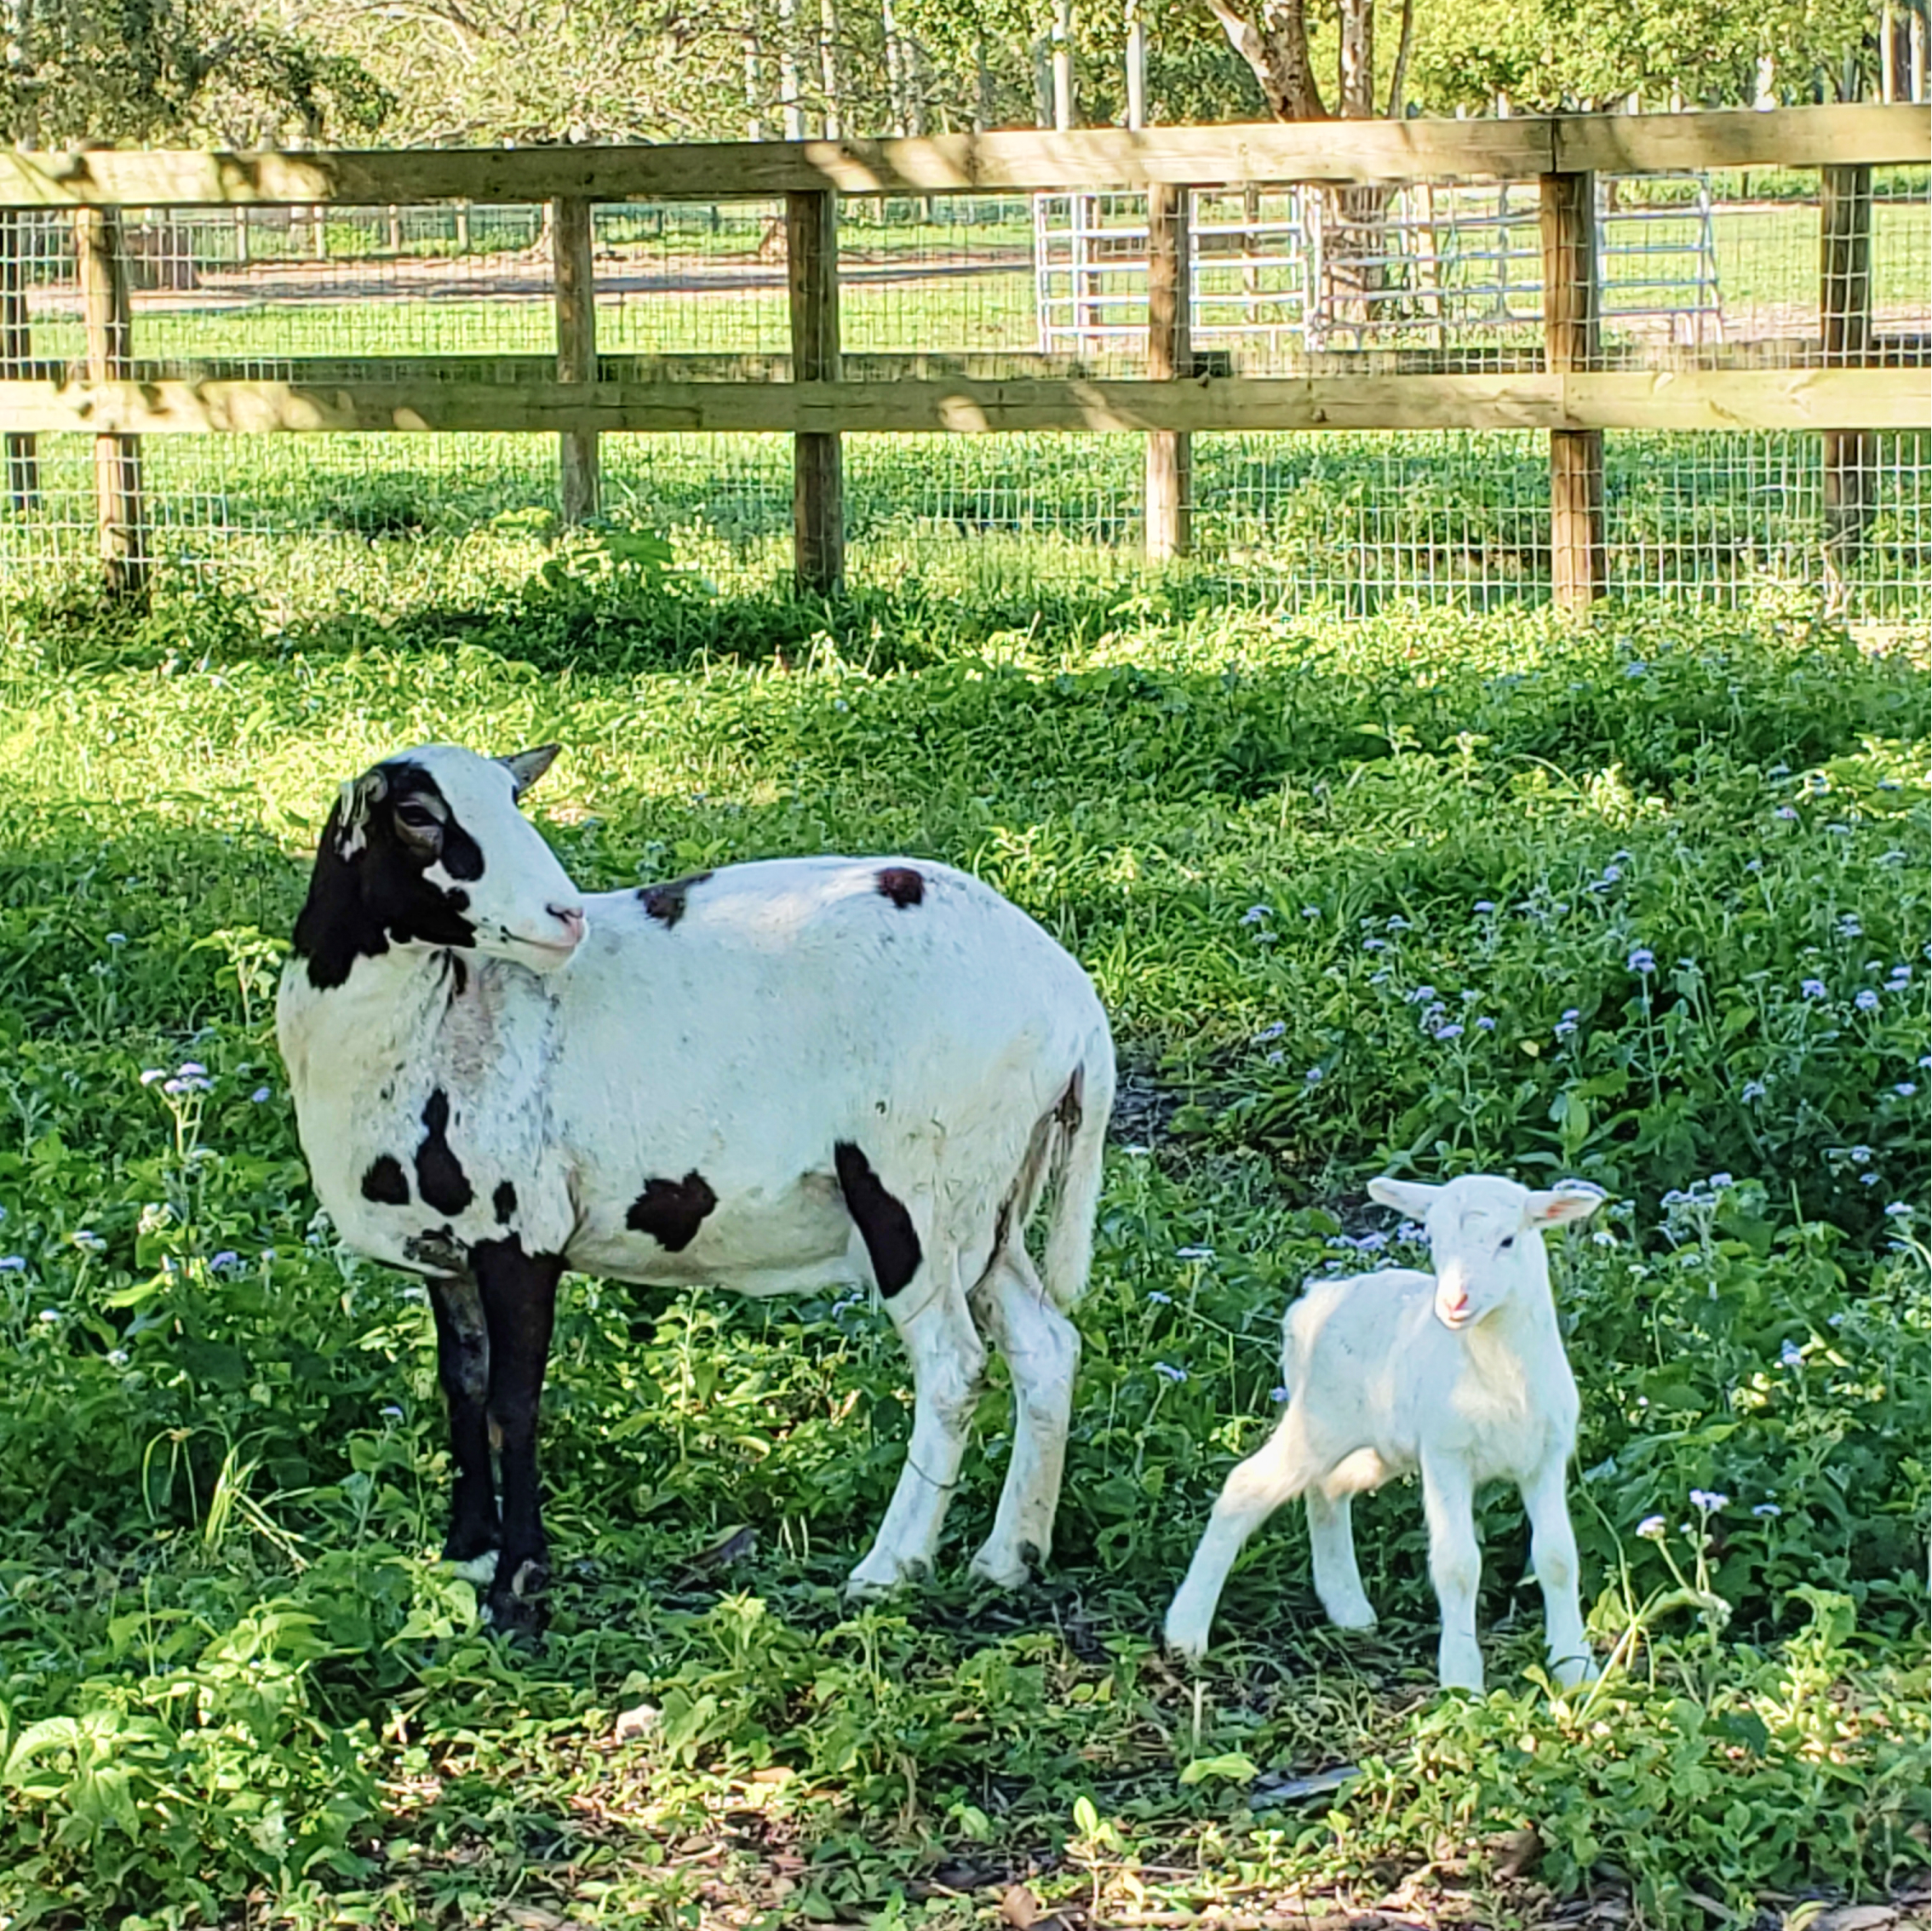 Sheep with mama